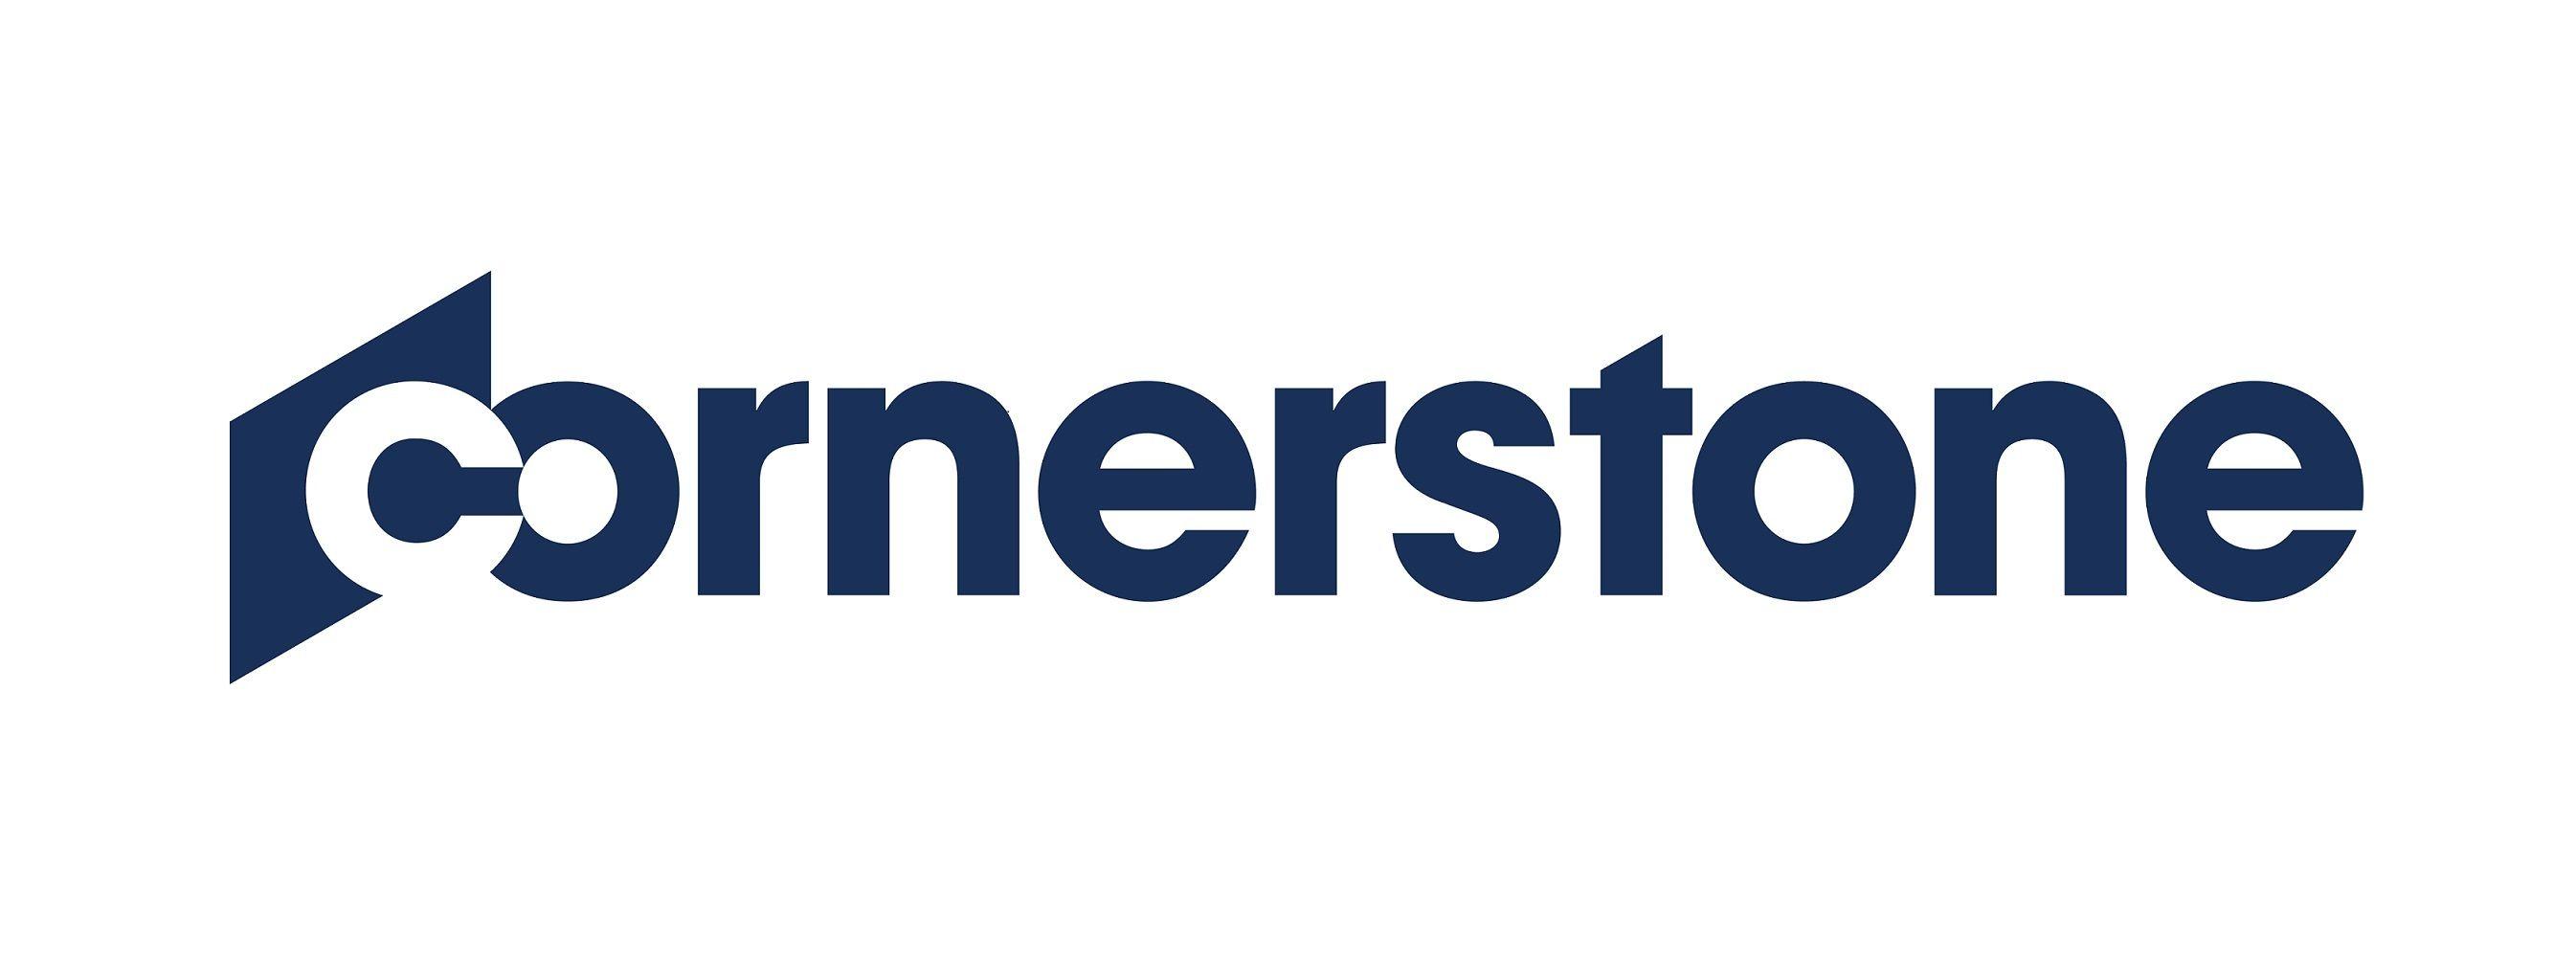 Cornerstone Logo - Cornerstone logo